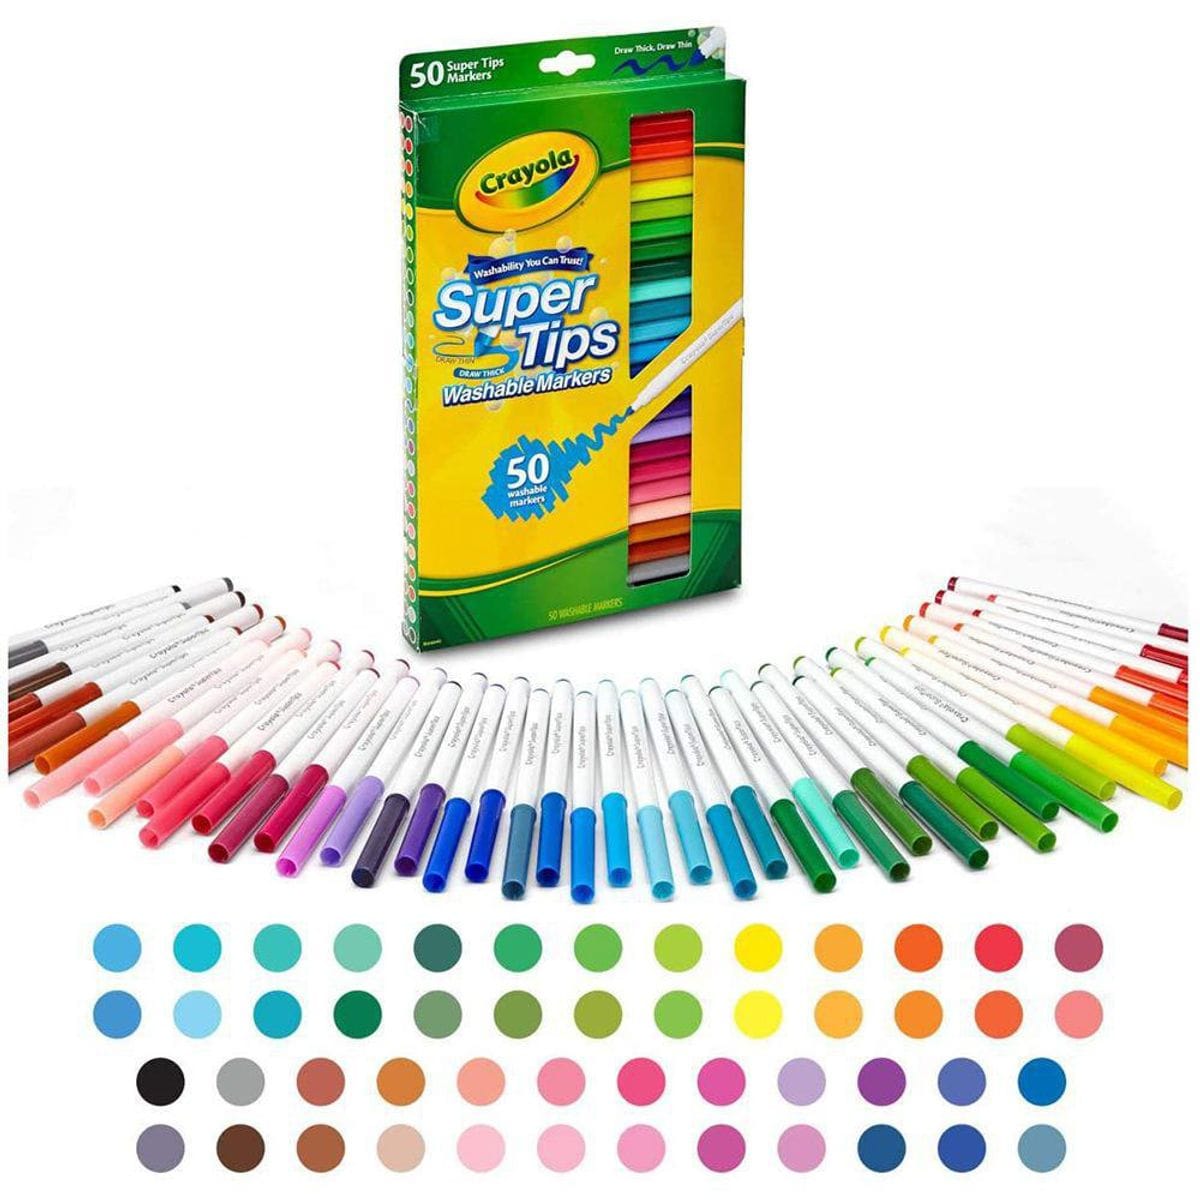 Marcadores Crayola Super Tips 50 Colores